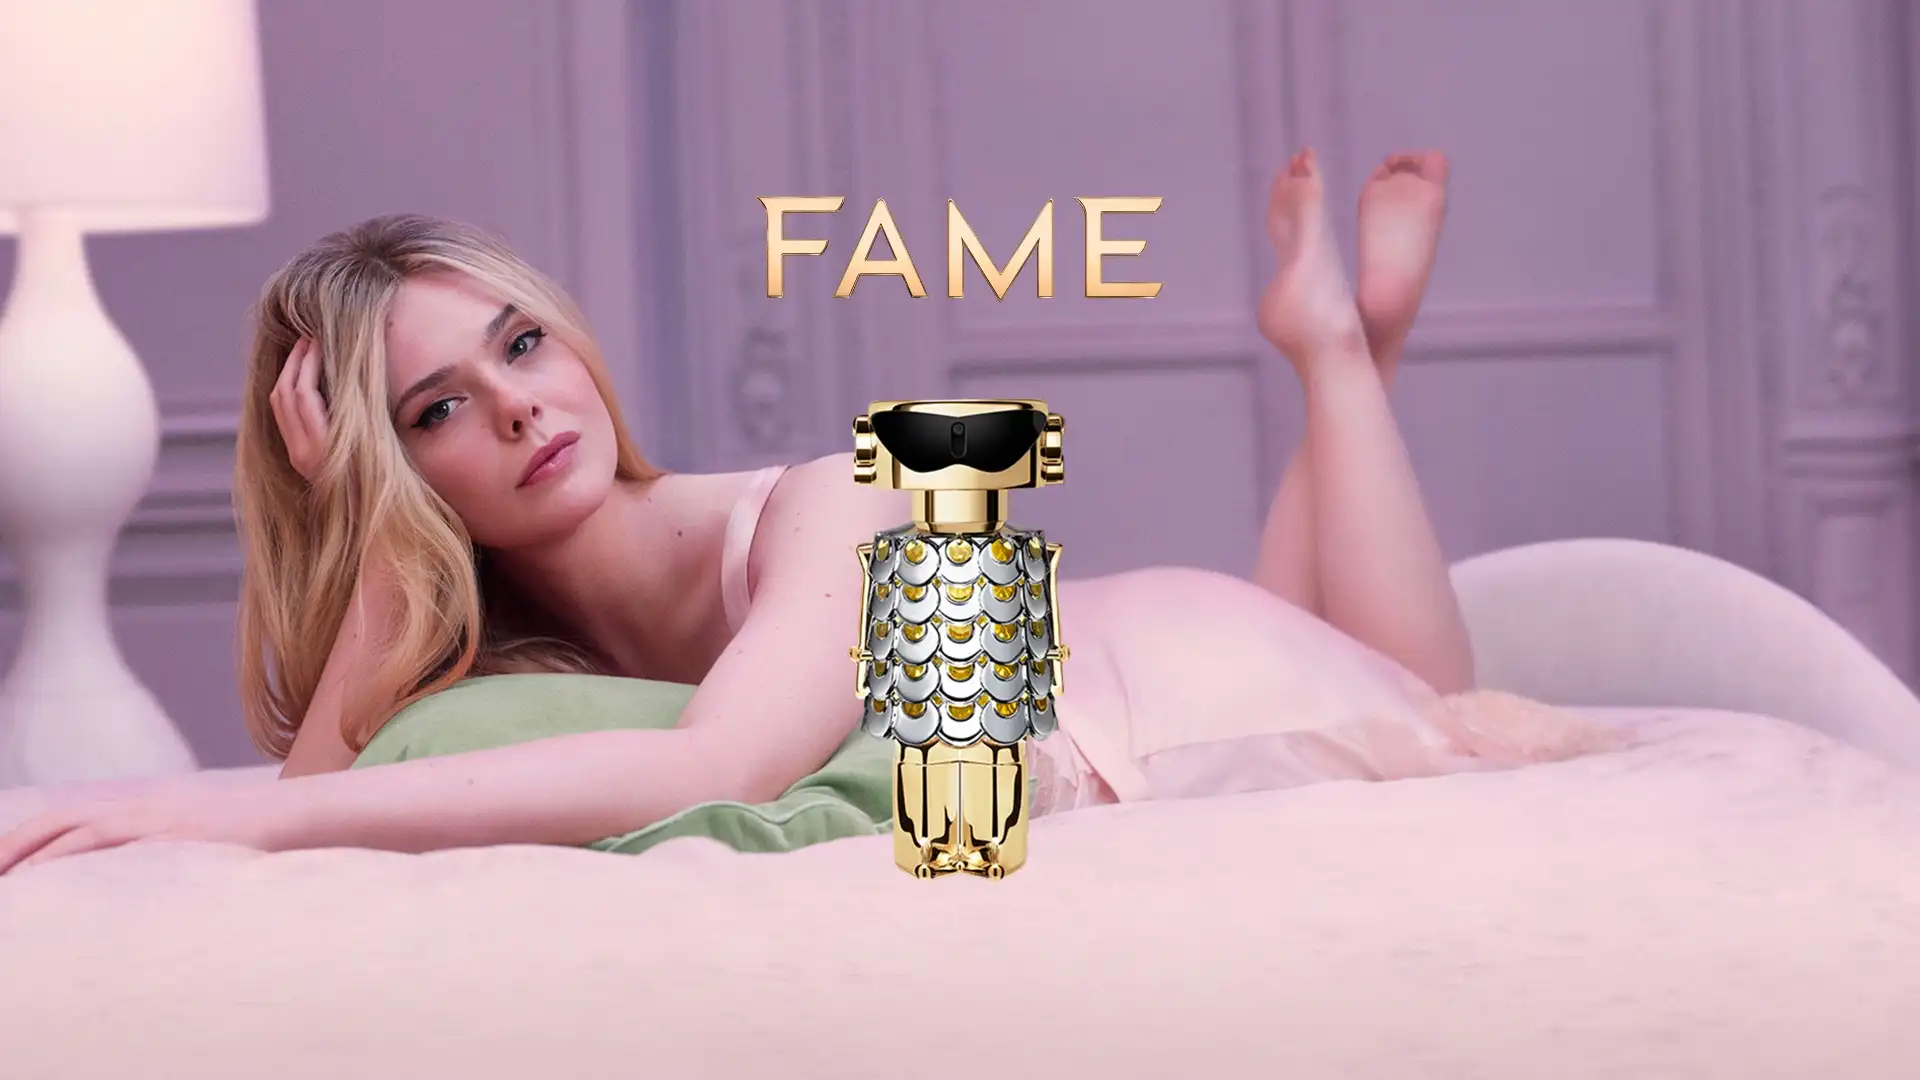 Así es Fame el nuevo perfume para mujeres de Paco Rabanne